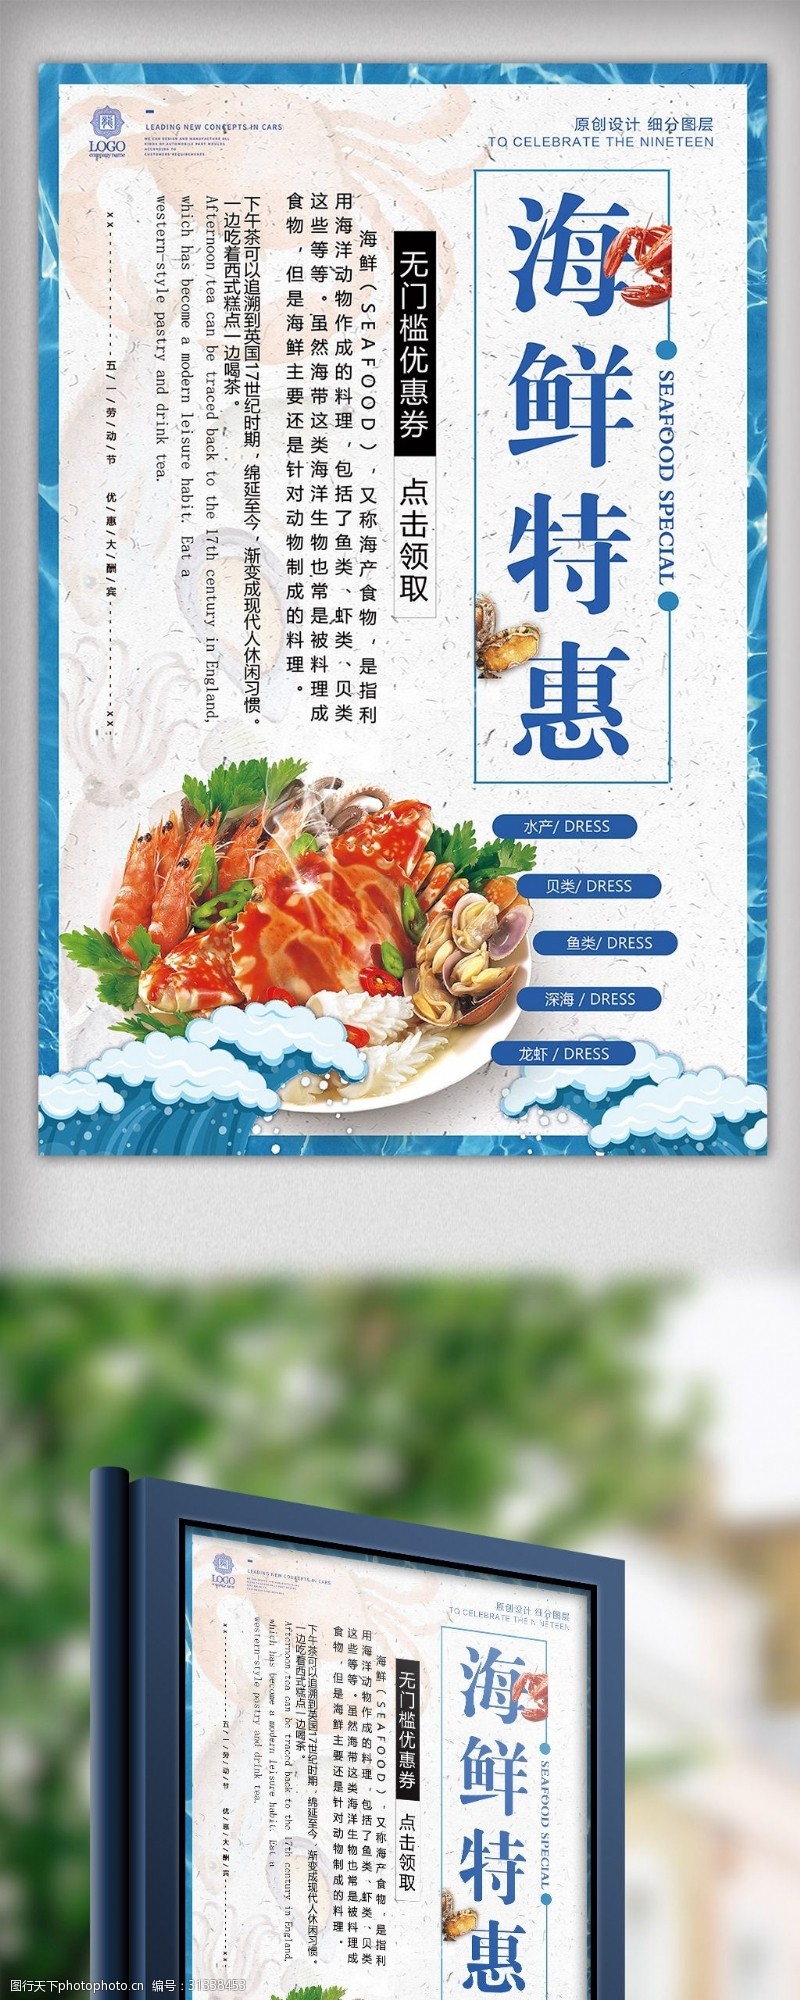 大闸蟹促销2018年蓝色大气高端海鲜特惠海报